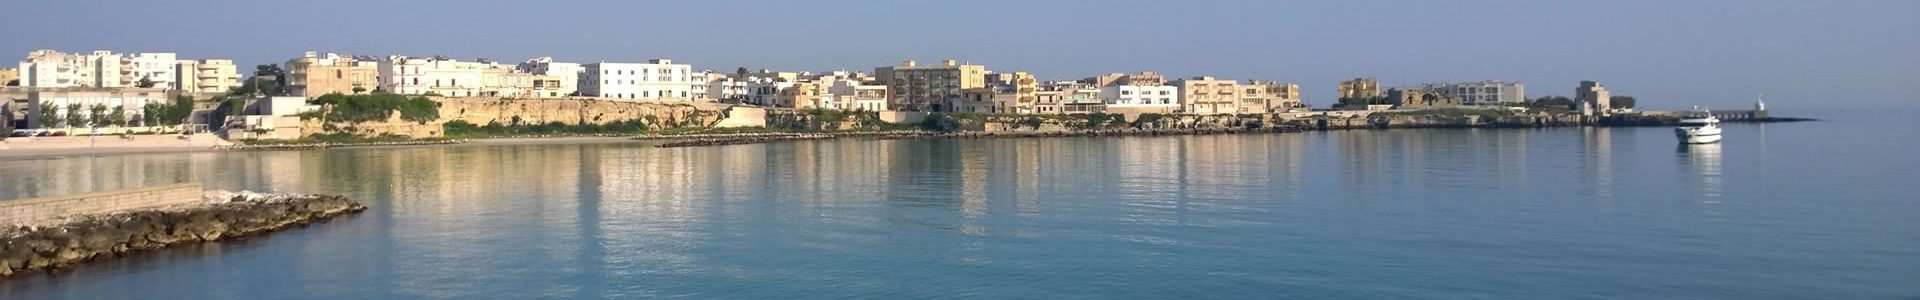 Appartamento 16 per vacanze ad Otranto